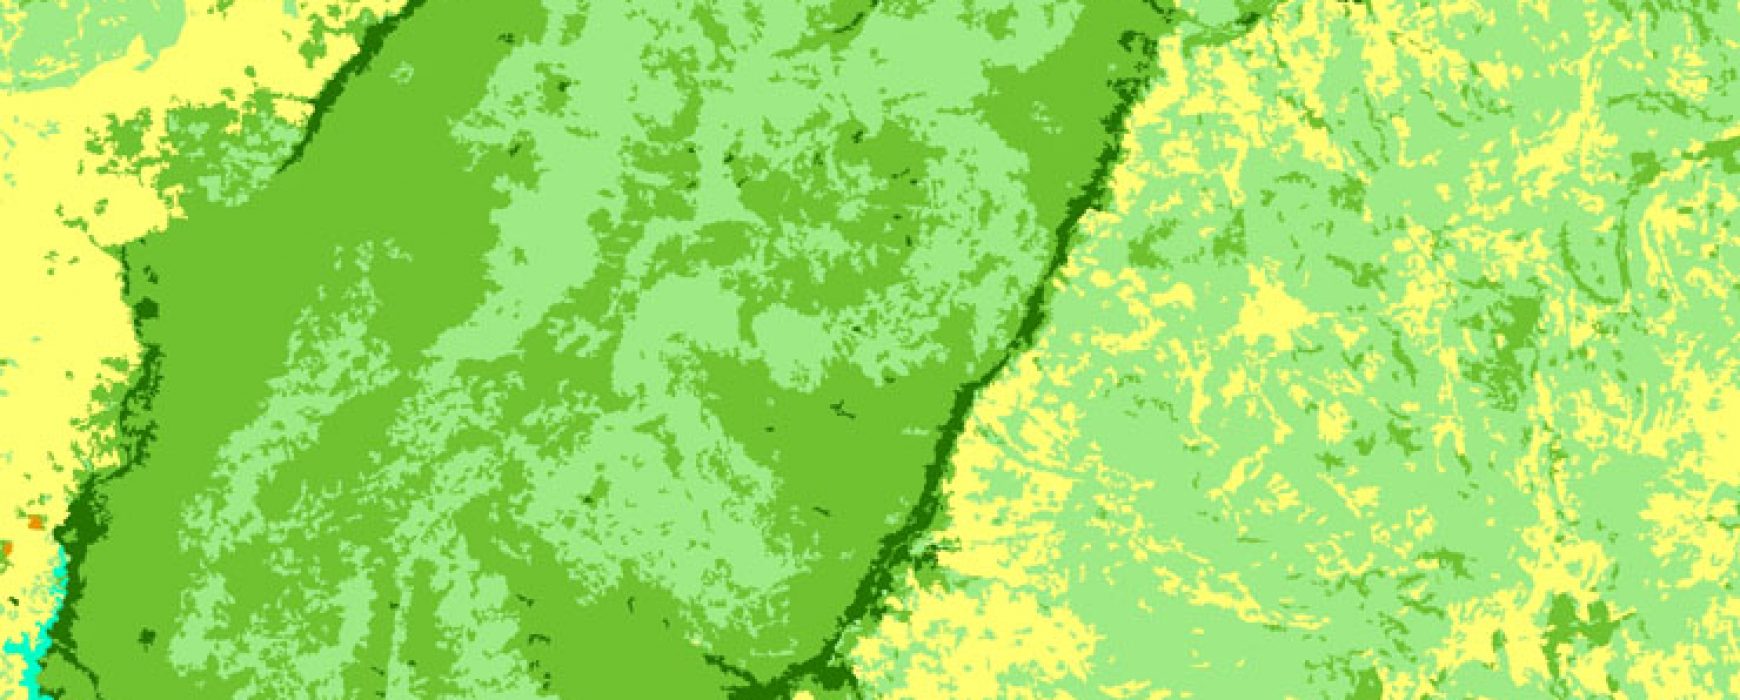 Bases de données d’occupation des terres, BURKINA FASO